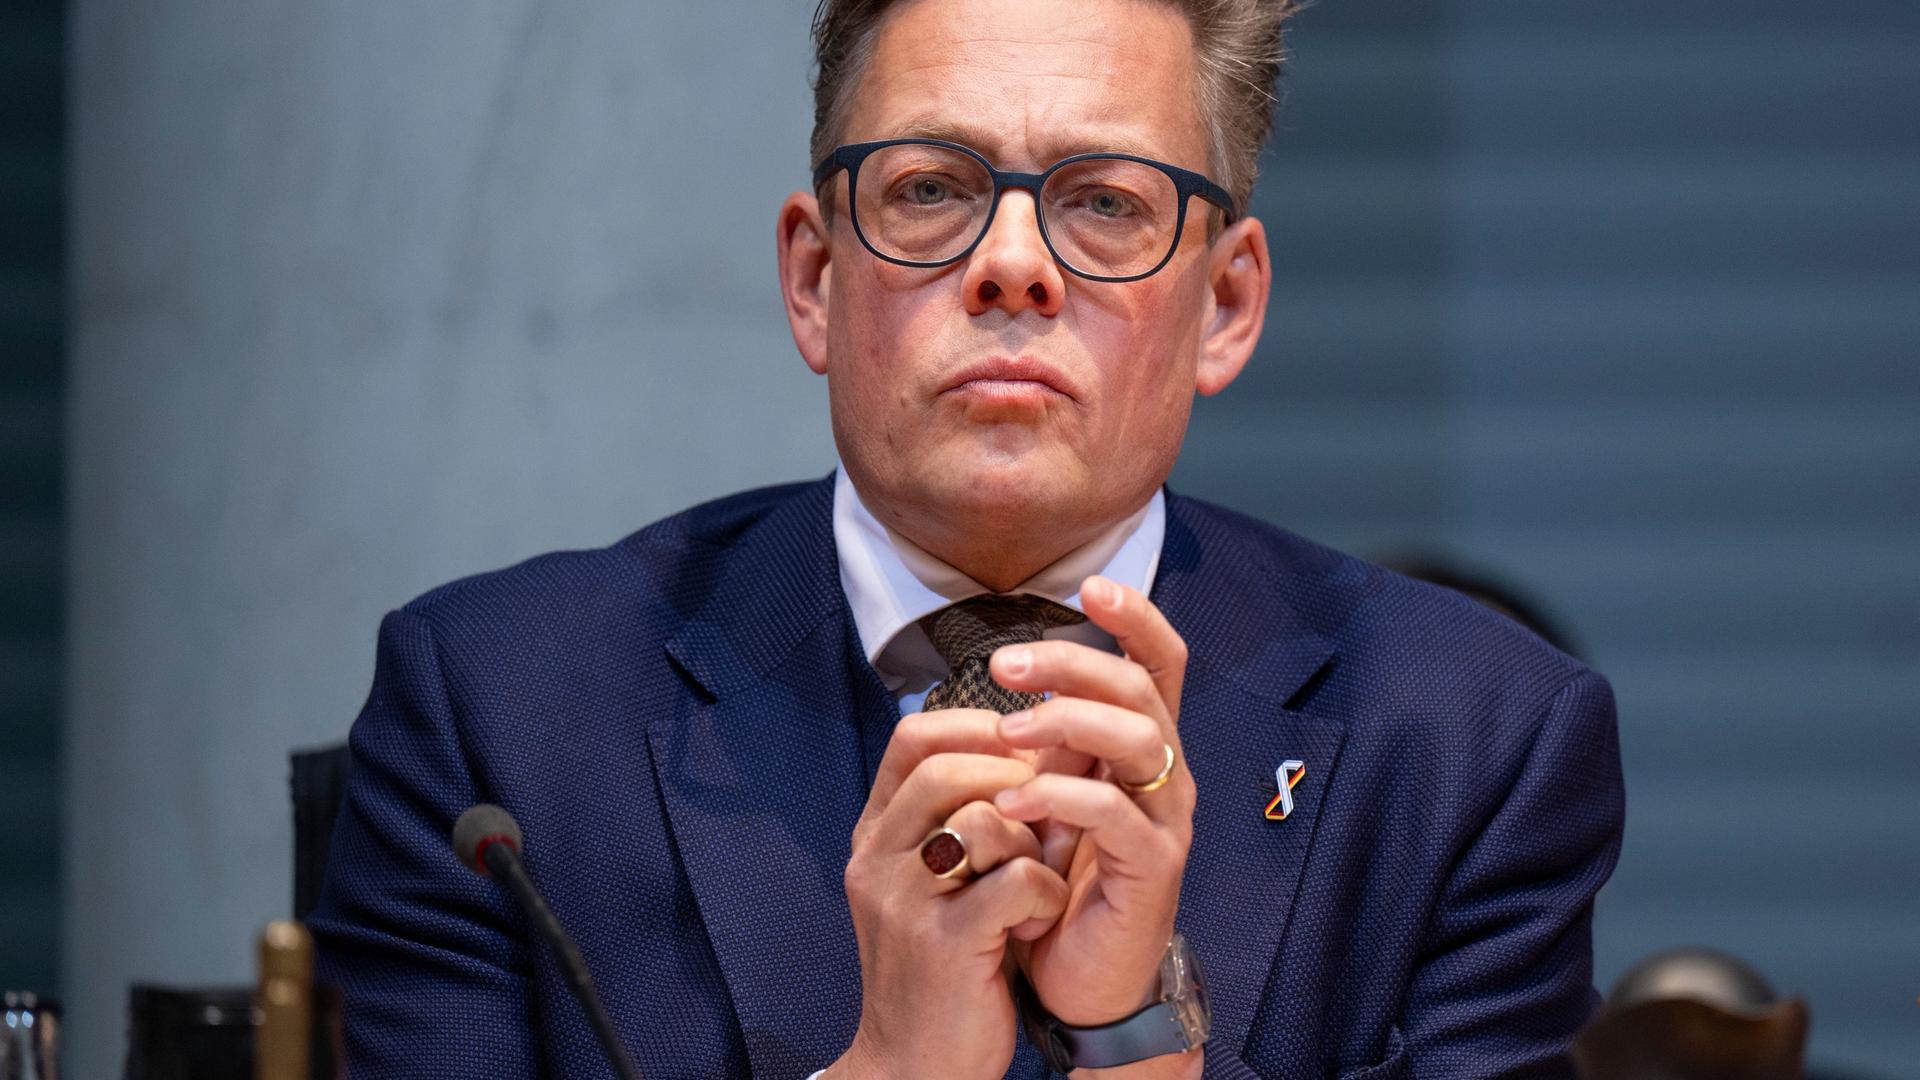 Konstantin von Notz (Bündnis 90/Die Grünen), Vorsitzender des Parlamentarischen Kontrollgremiums, blickt mit gespitztem Mund und gefalteten Händen in die Kamera. Er trägt ein blaues Sakko und Krawatte.